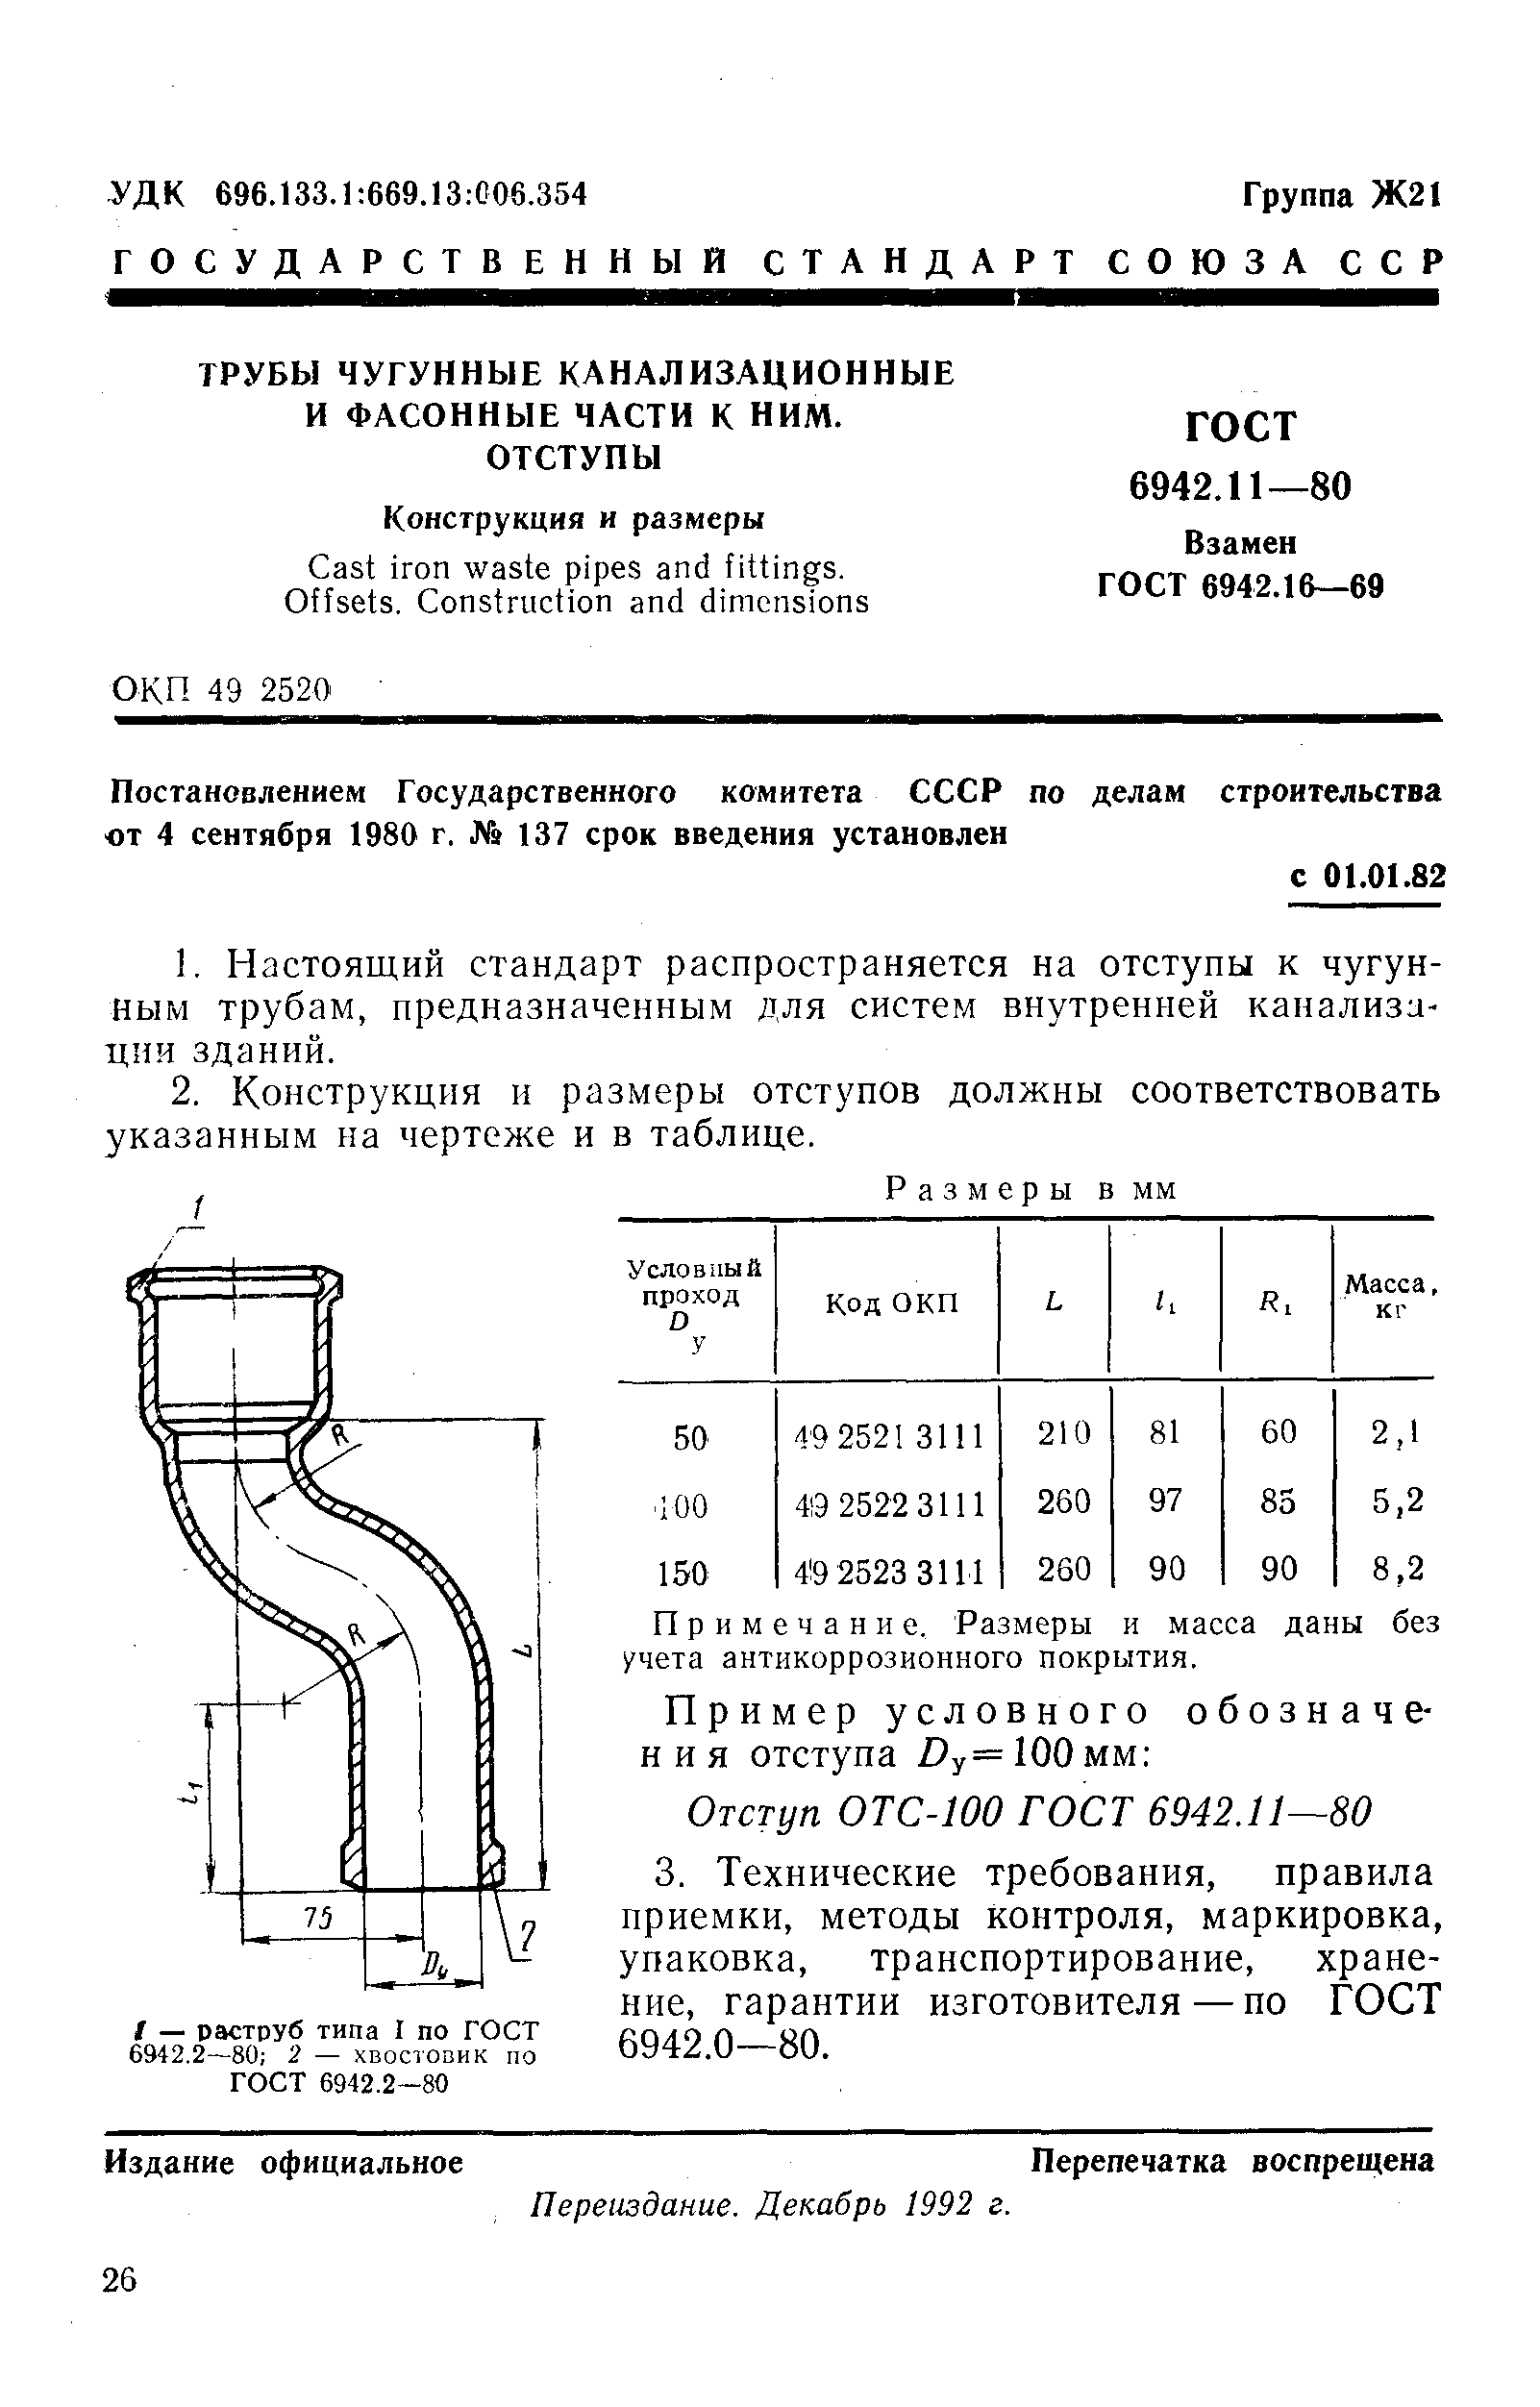 Канализационные чугунные трубы для внутренней канализации ГОСТ 6942-80